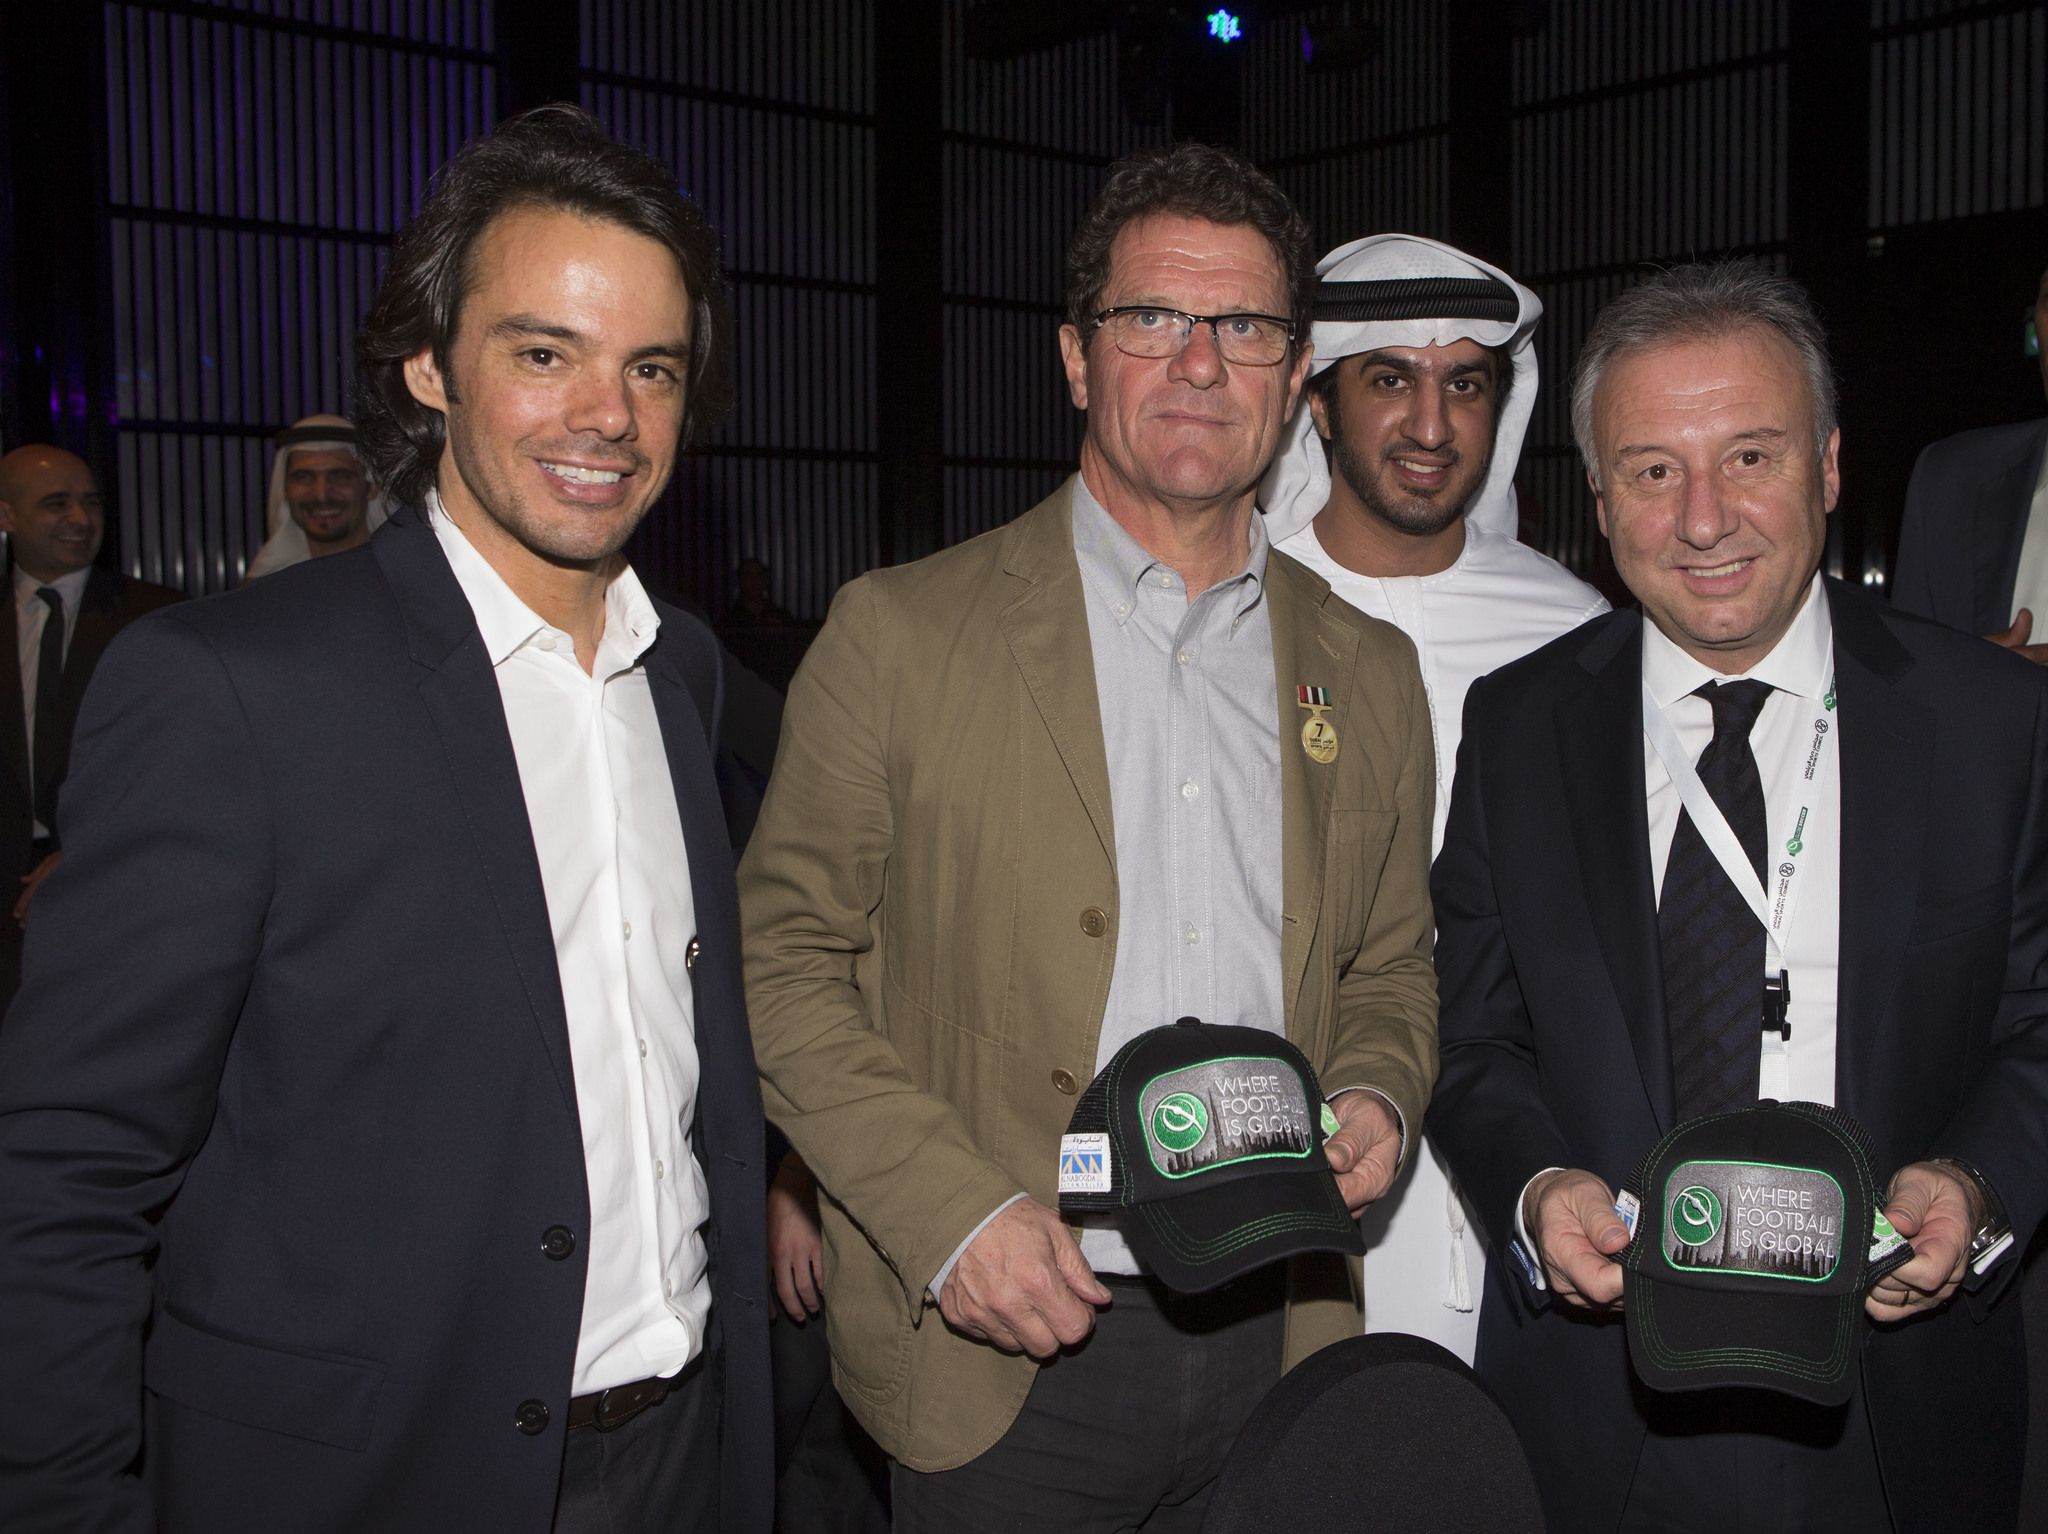 Tomasso Bendoni, CEO de Globe Soccer, junto a Fabio Capello y Alberto Zaccheroni.